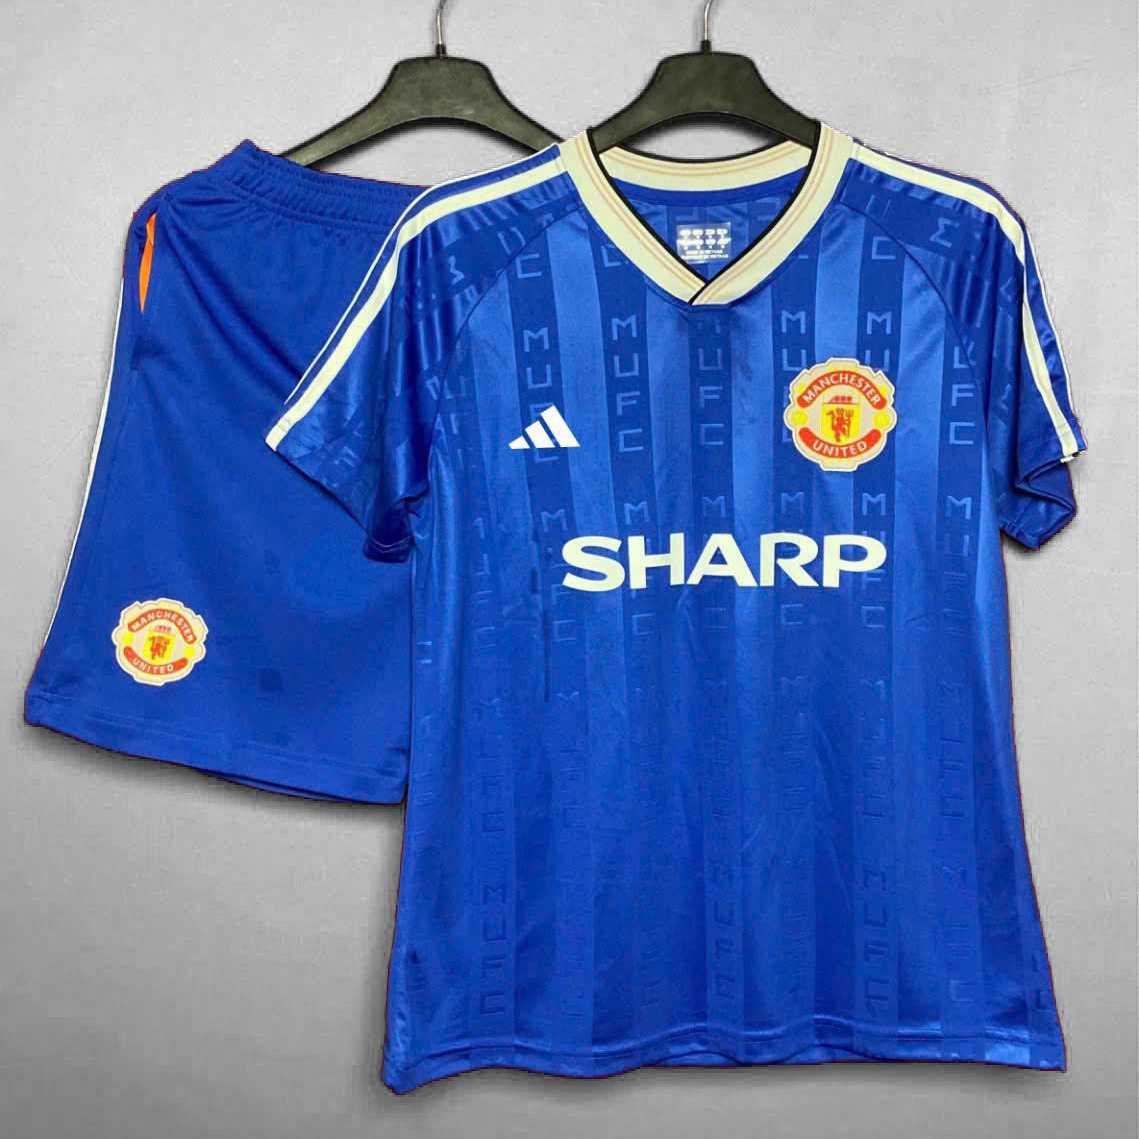 Bộ quần áo bóng đá manchester united mu sharp xanh biển đậm quần có túi hoạ tiết mufc 2